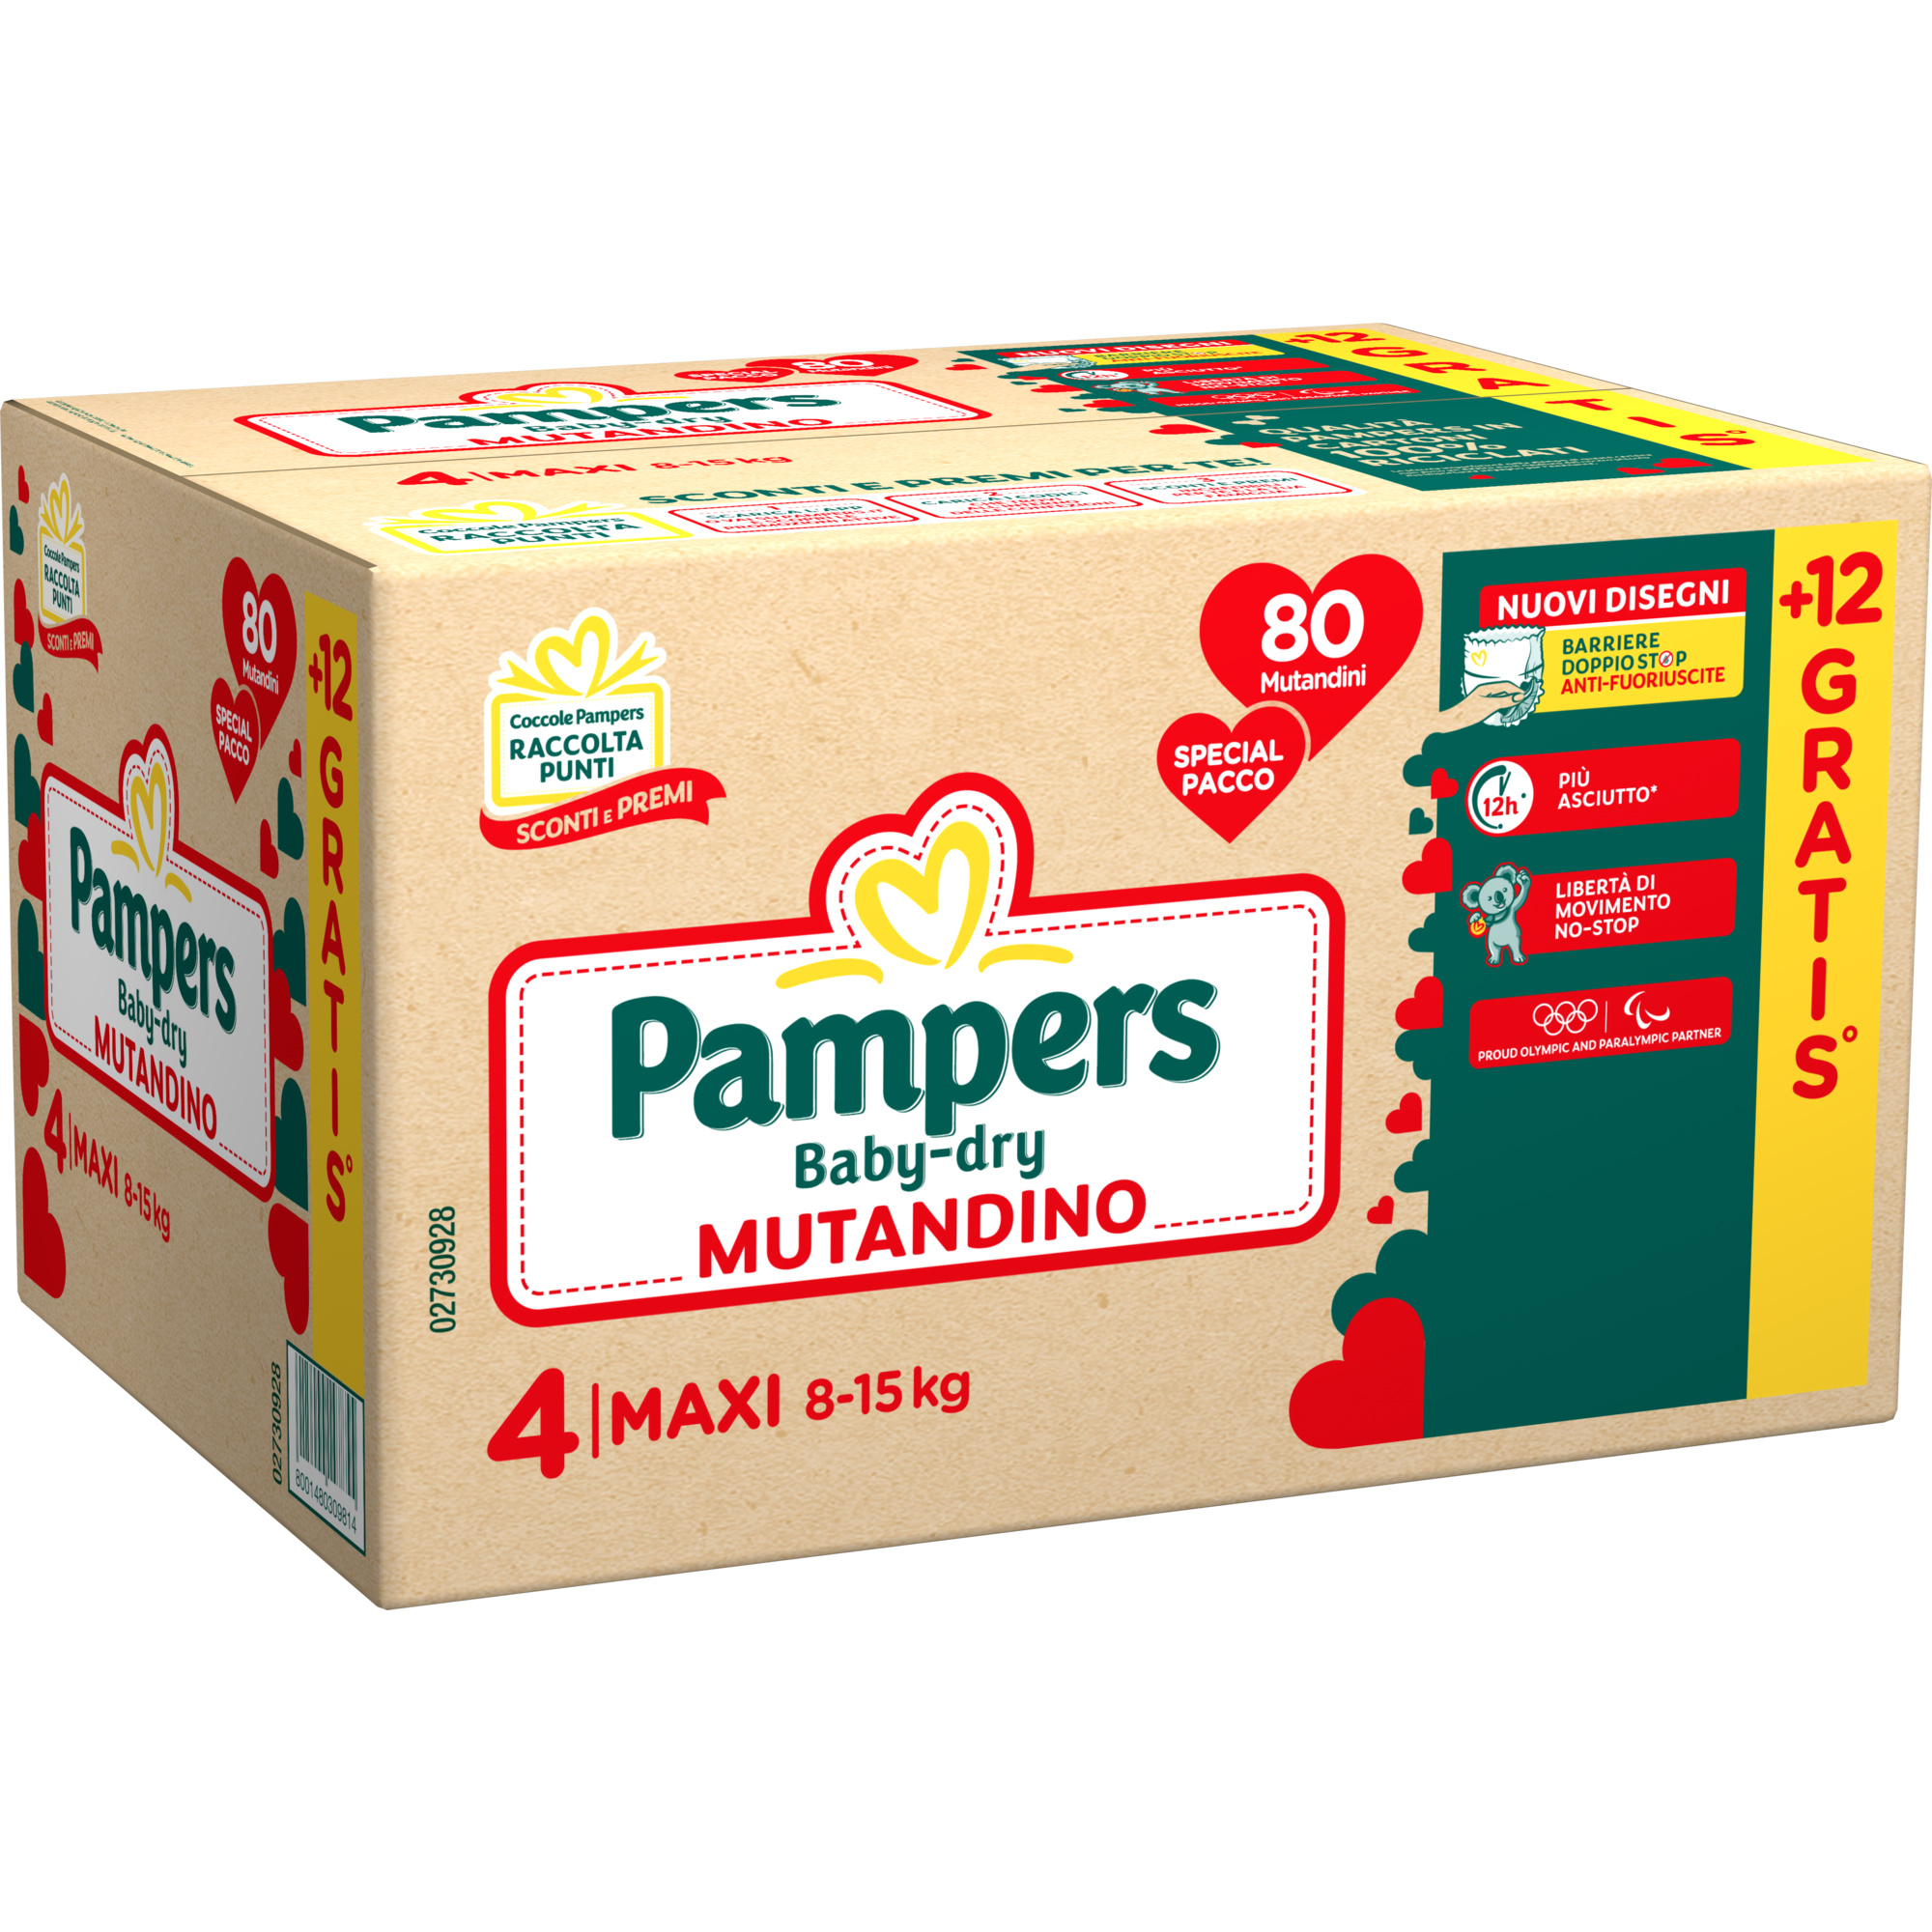 Pampers baby-dry mutandino quadri maxi 80 + 12 pz - Pampers